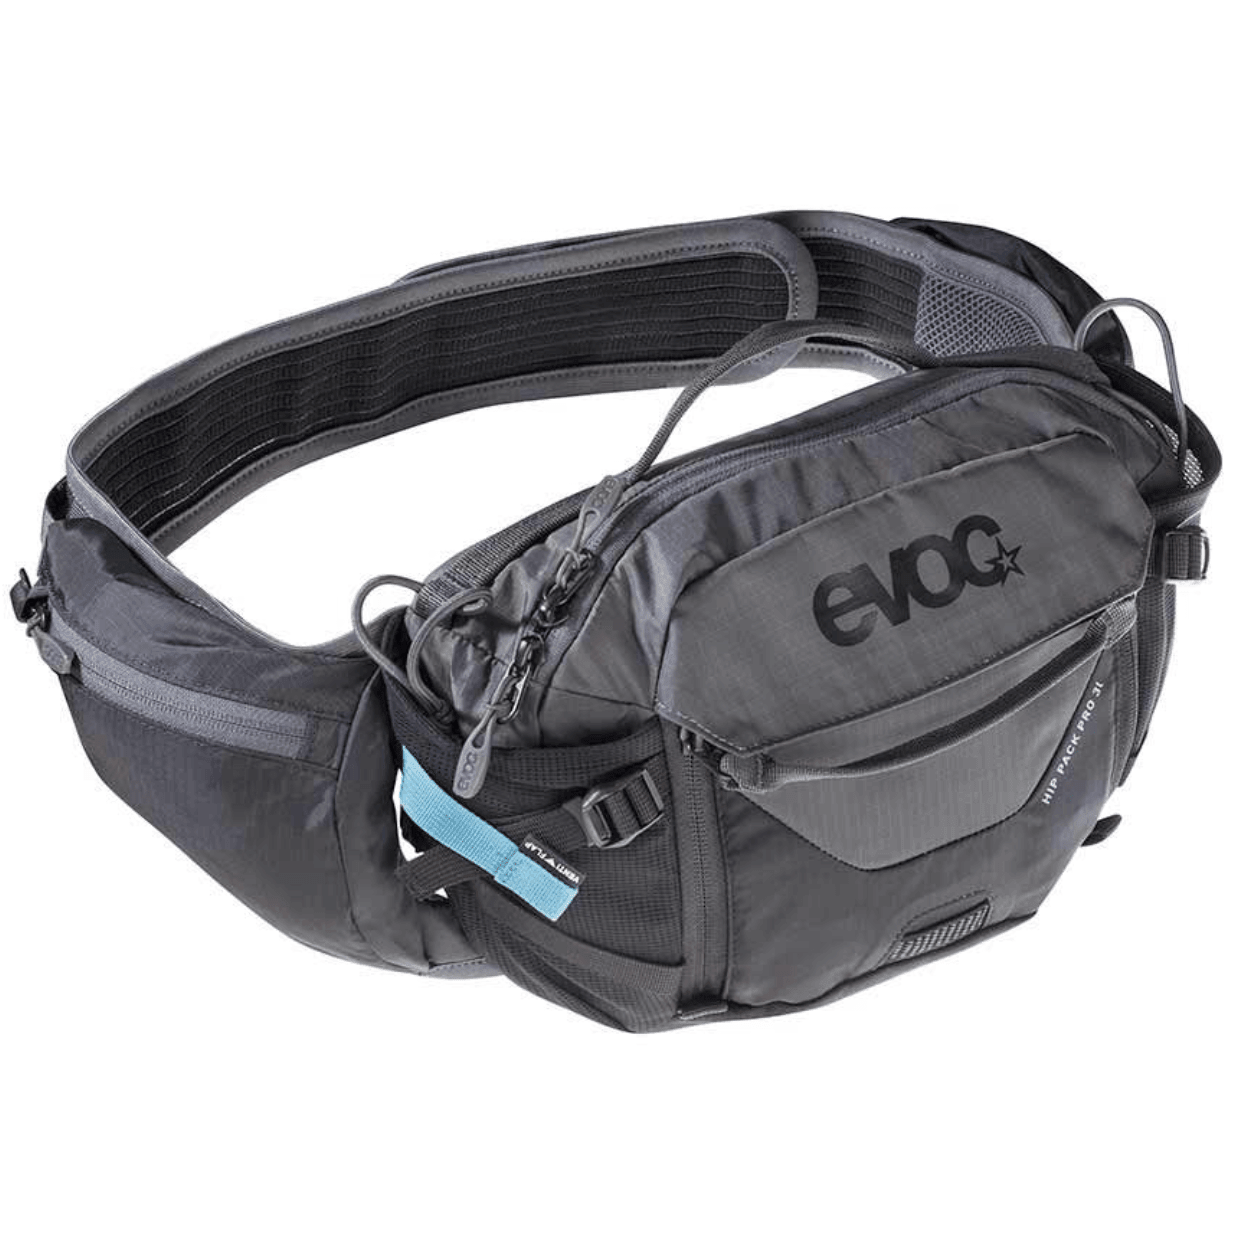 EVOC Hip Pack Pro 3L (No Bladder) Black/Carbon Grey Hip Packs